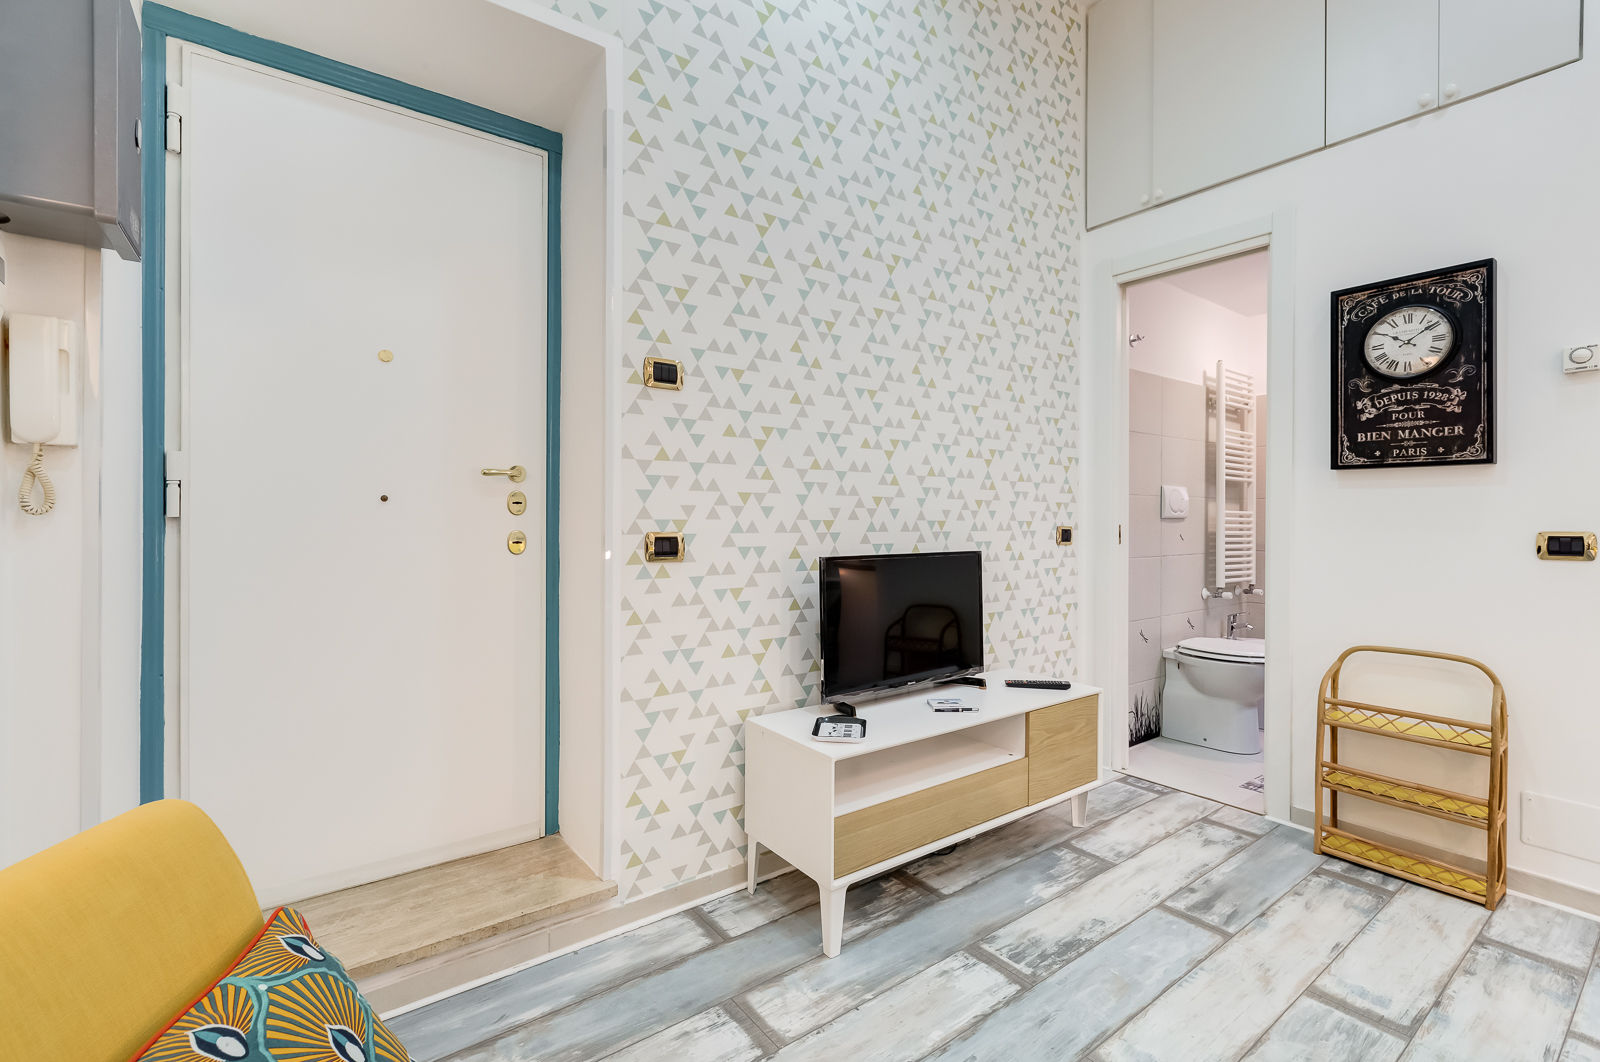 Mini Appartamento Turistico - Roma, Luca Tranquilli - Fotografo Luca Tranquilli - Fotografo Salones de estilo moderno